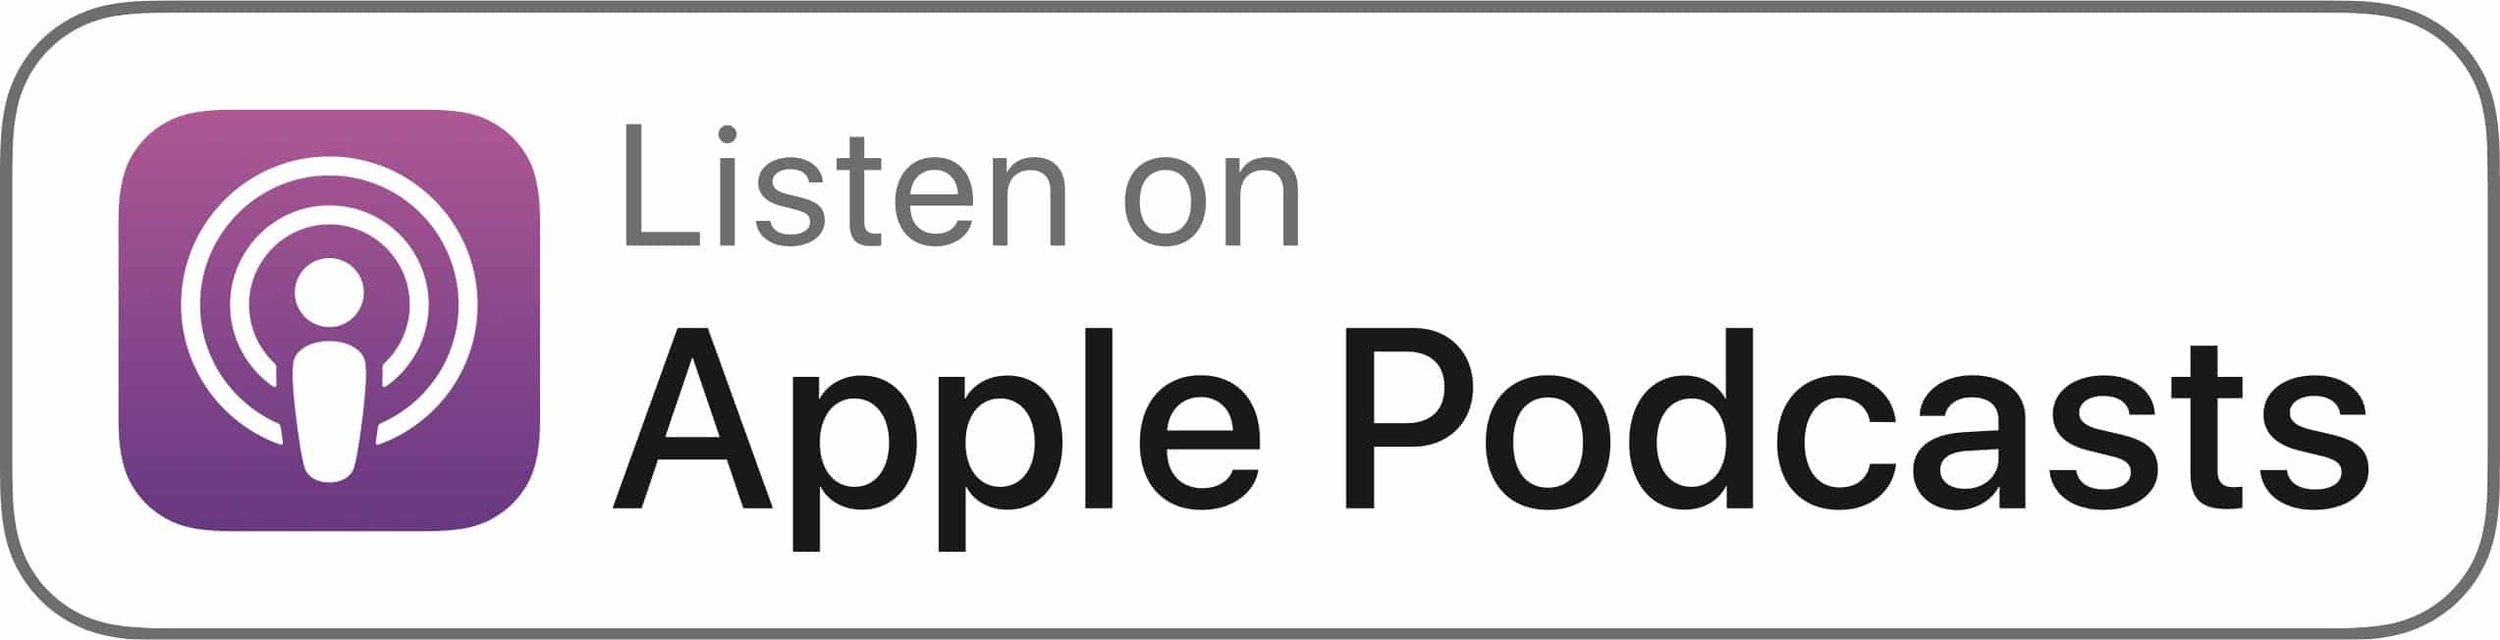 Apple Podcasts (Copy) (Copy) (Copy) (Copy) (Copy) (Copy) (Copy) (Copy)